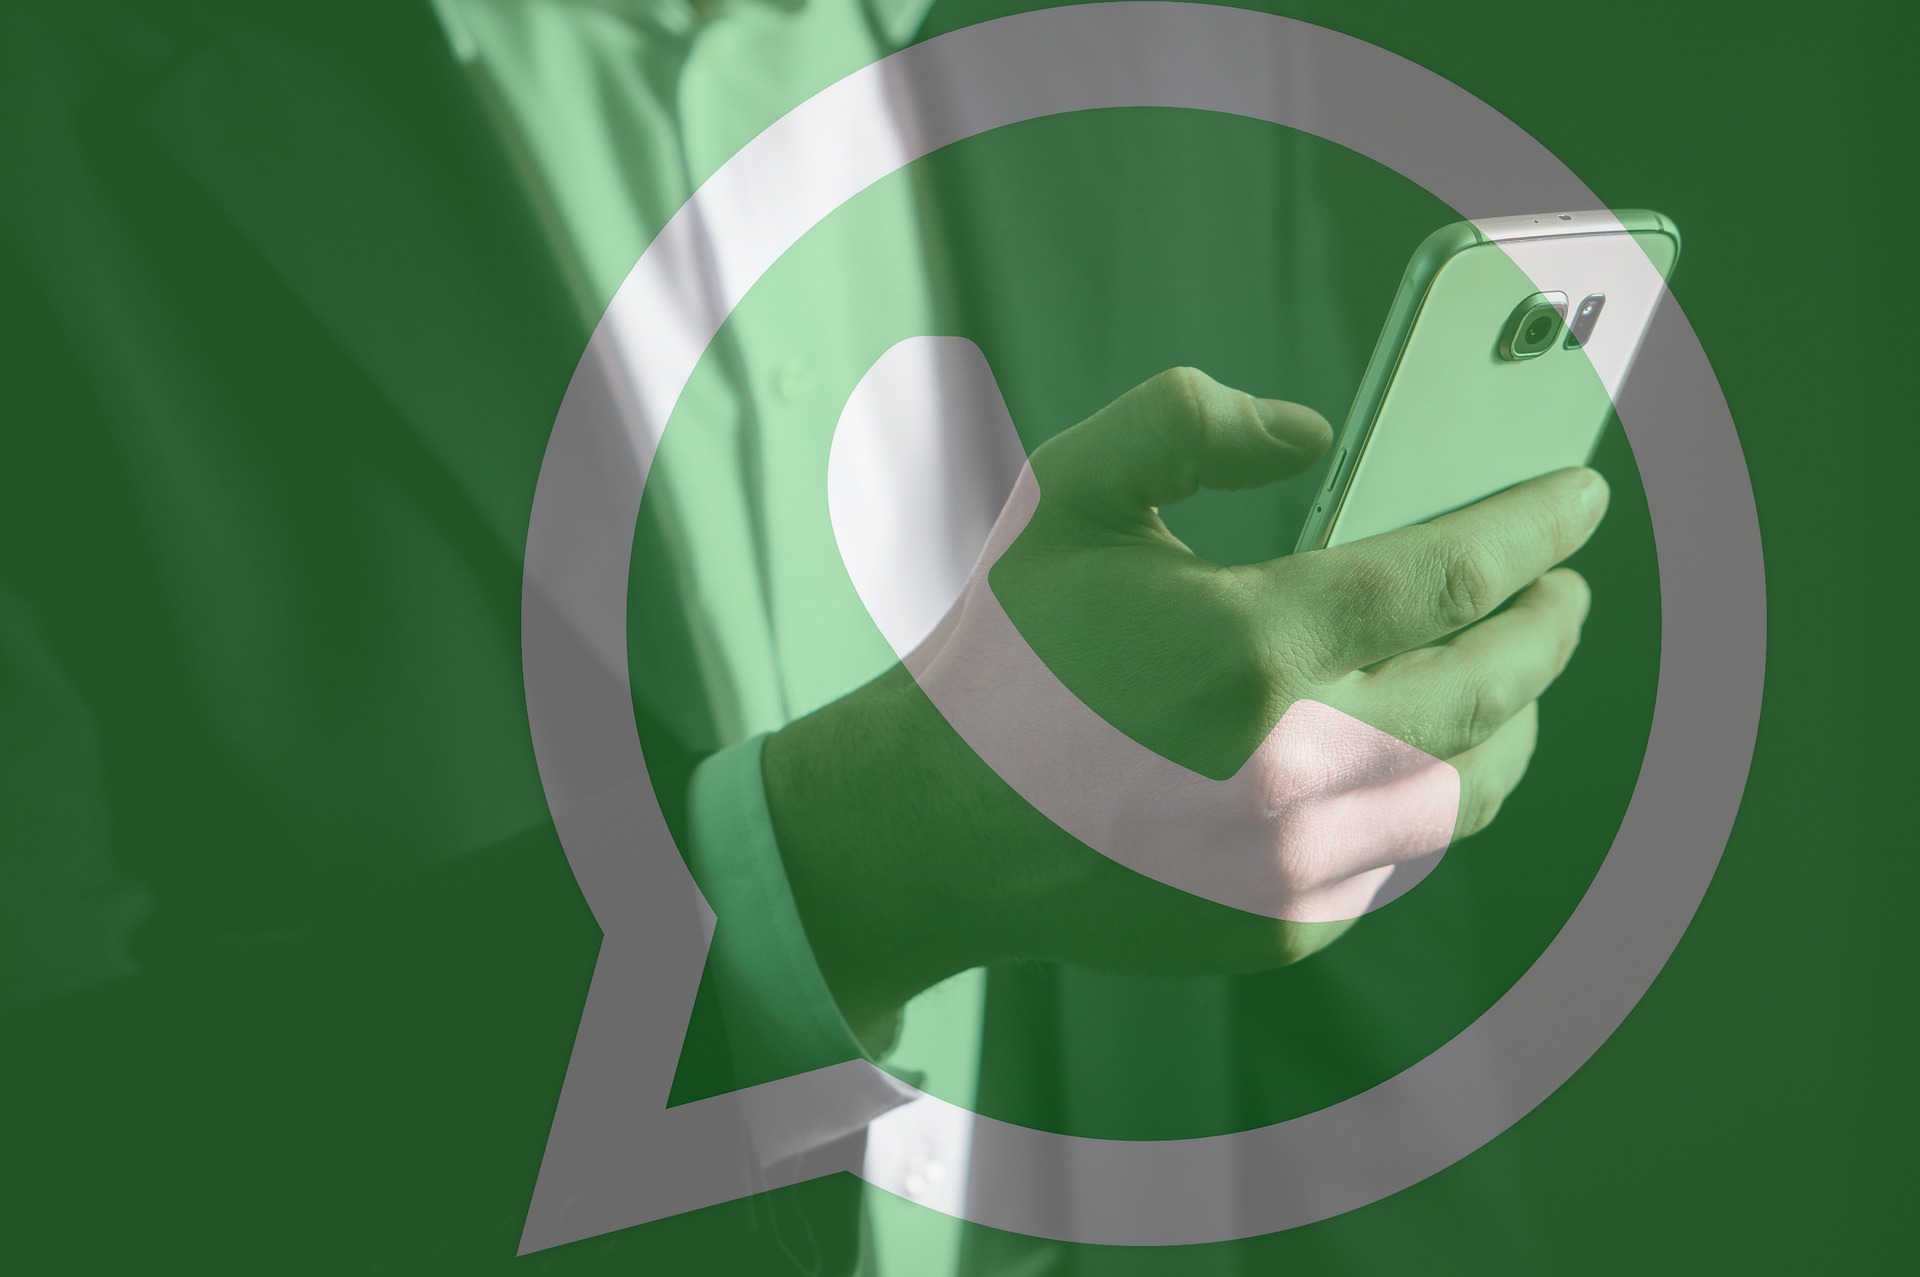 Las llamadas de WhatsApp se pueden grabar en dispositivos con sistema iOS o Android. (Foto Prensa Libre: Pixabay)